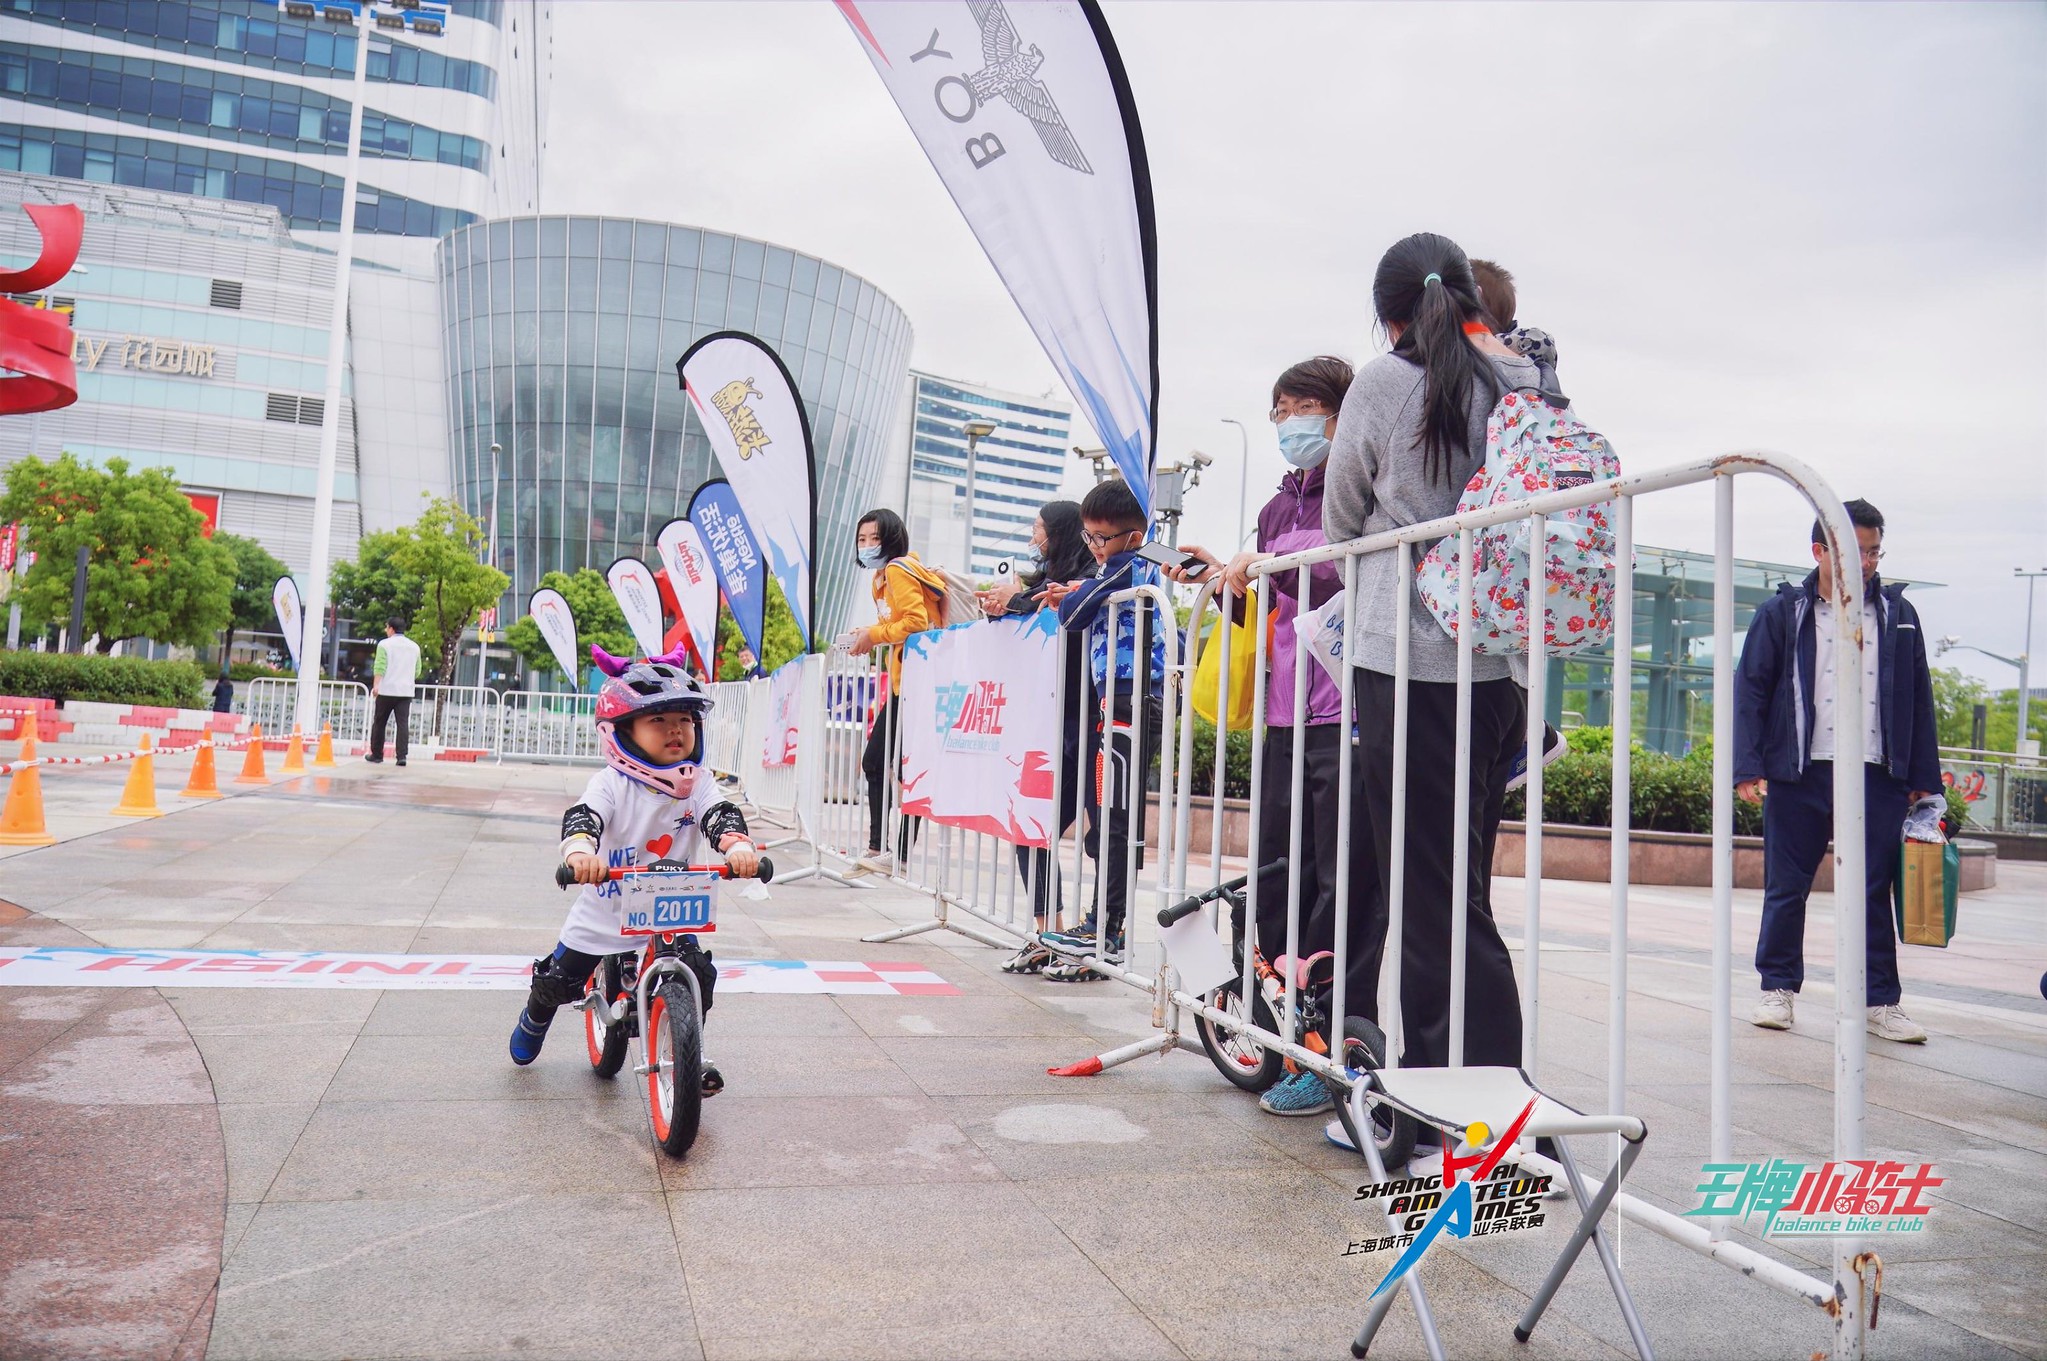 1 (6) - Push Bike in Shanghai 2022